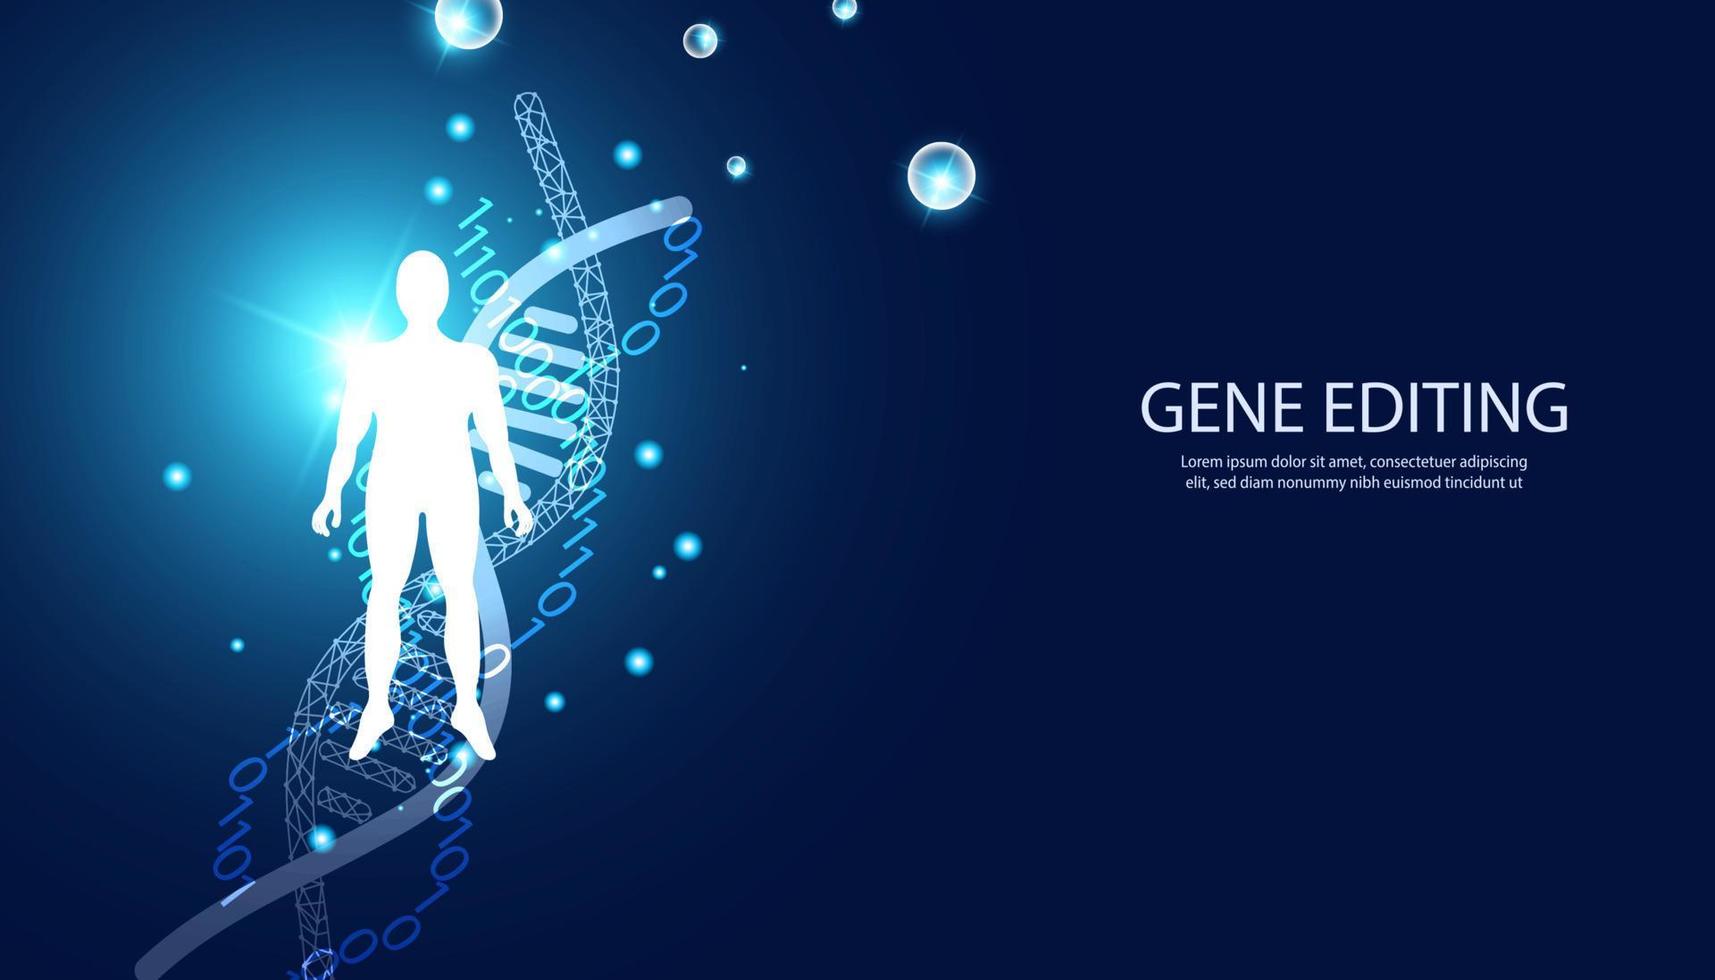 ciência abstrata experimentos bioquímicos humanos, conceitos de dna, in vitro, edição de genes, transplantes de genes ou medicamentos em um fundo azul. vetor